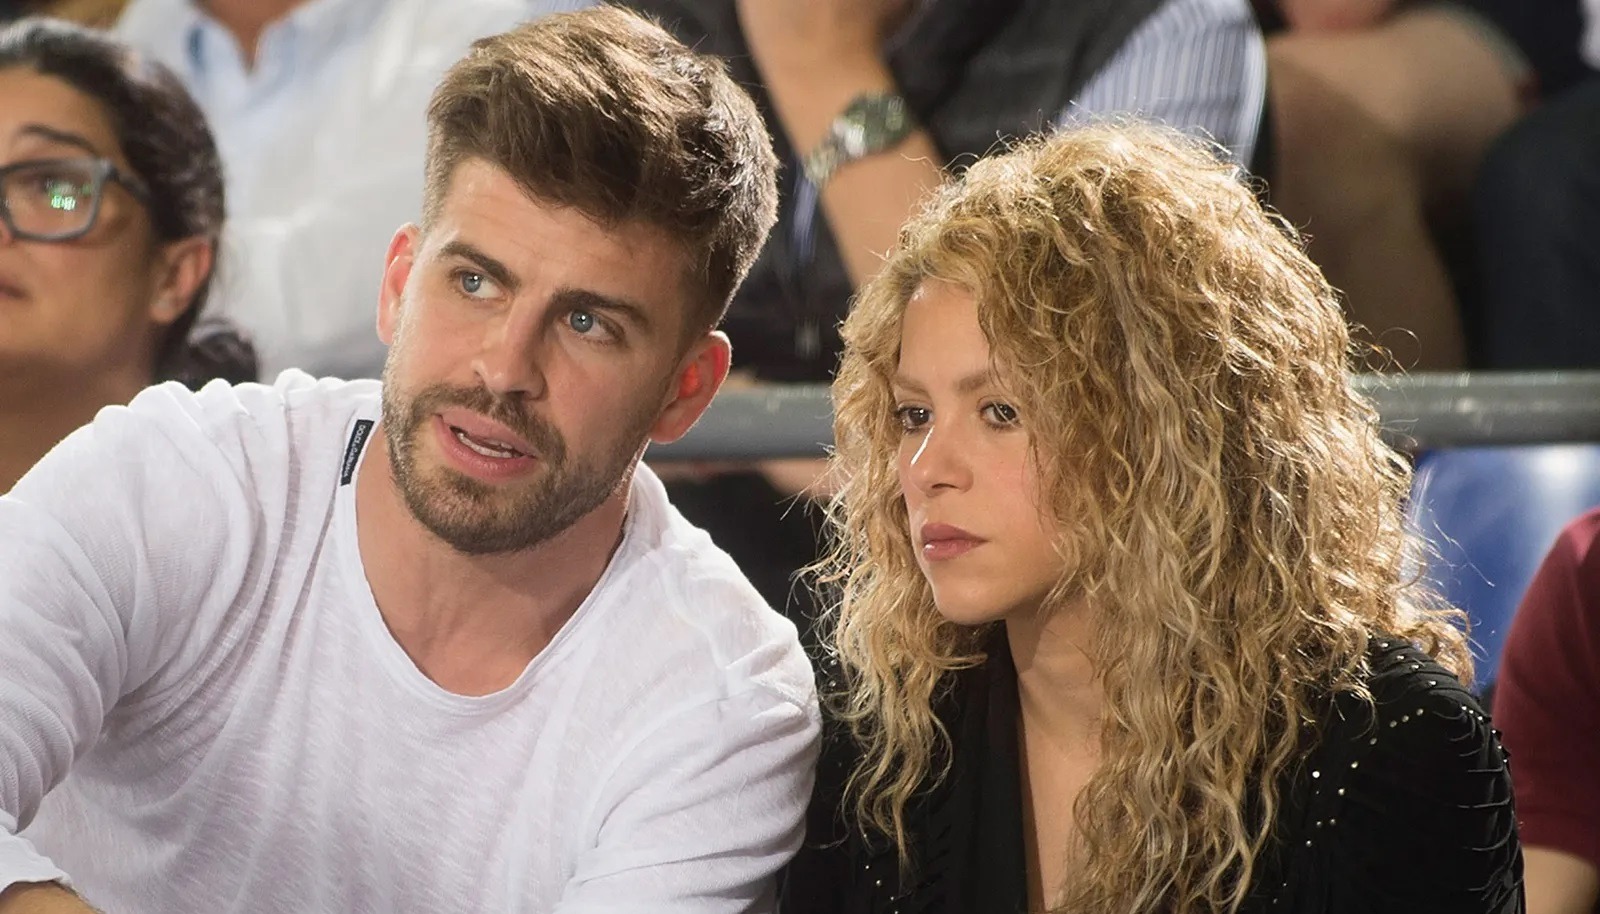 ¿Contará todo? Shakira estaría preparando un documental sobre su ruptura con Gerard Piqué